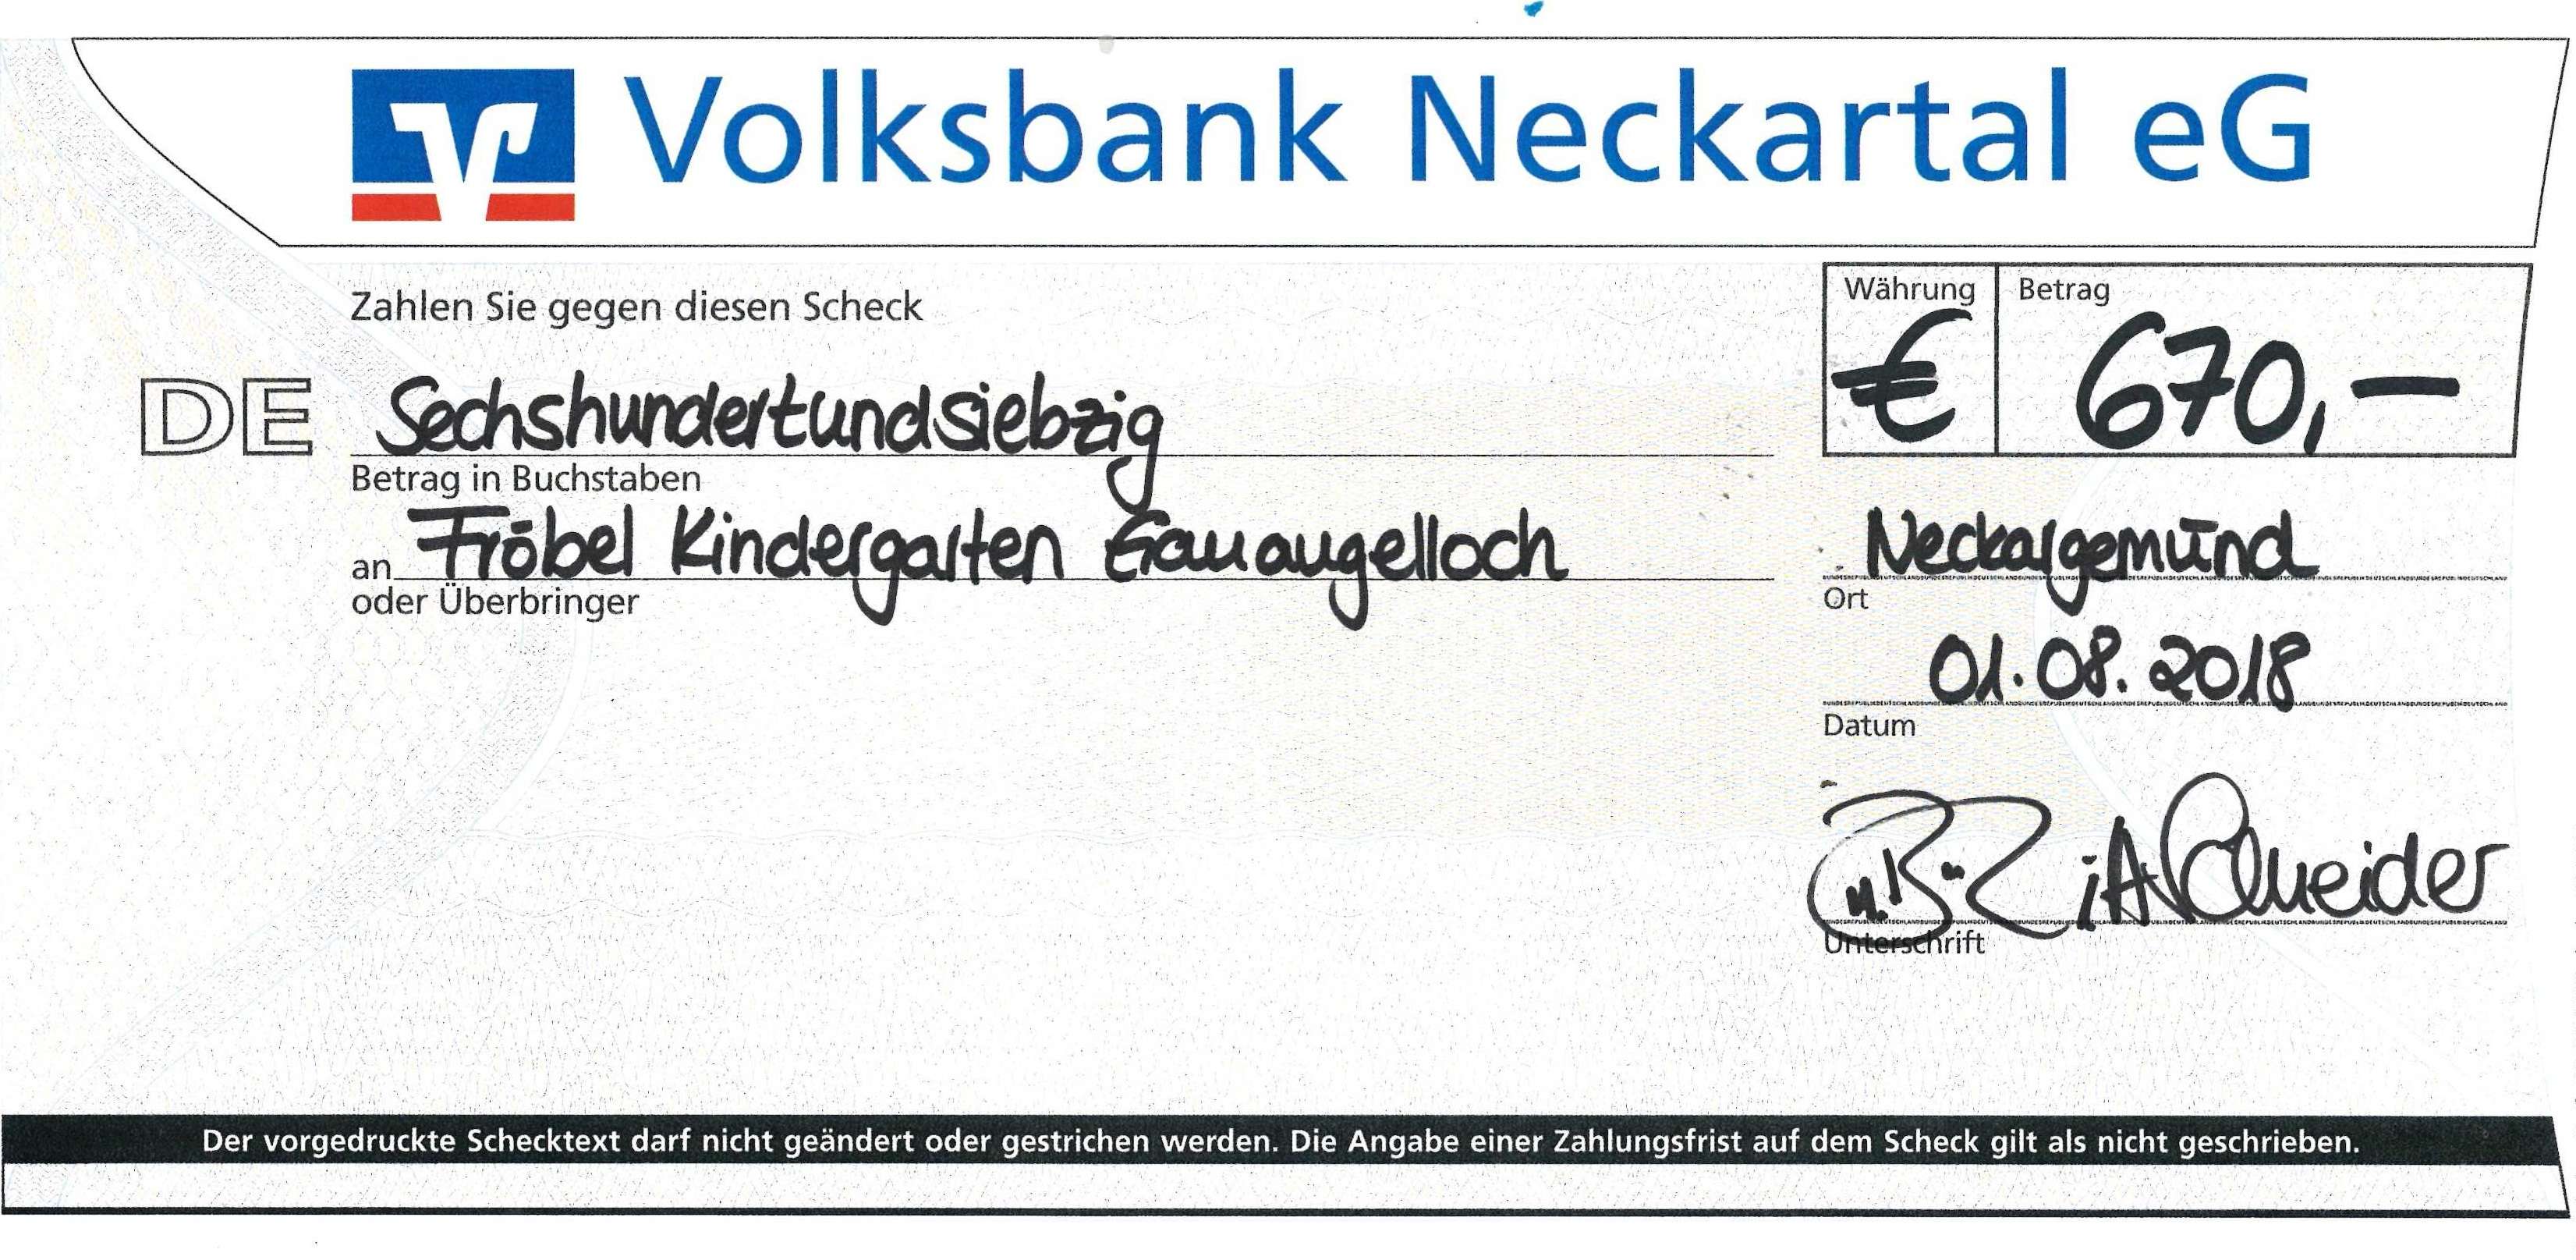  Spendenscheck der Volksbank Neckartal e.G. 